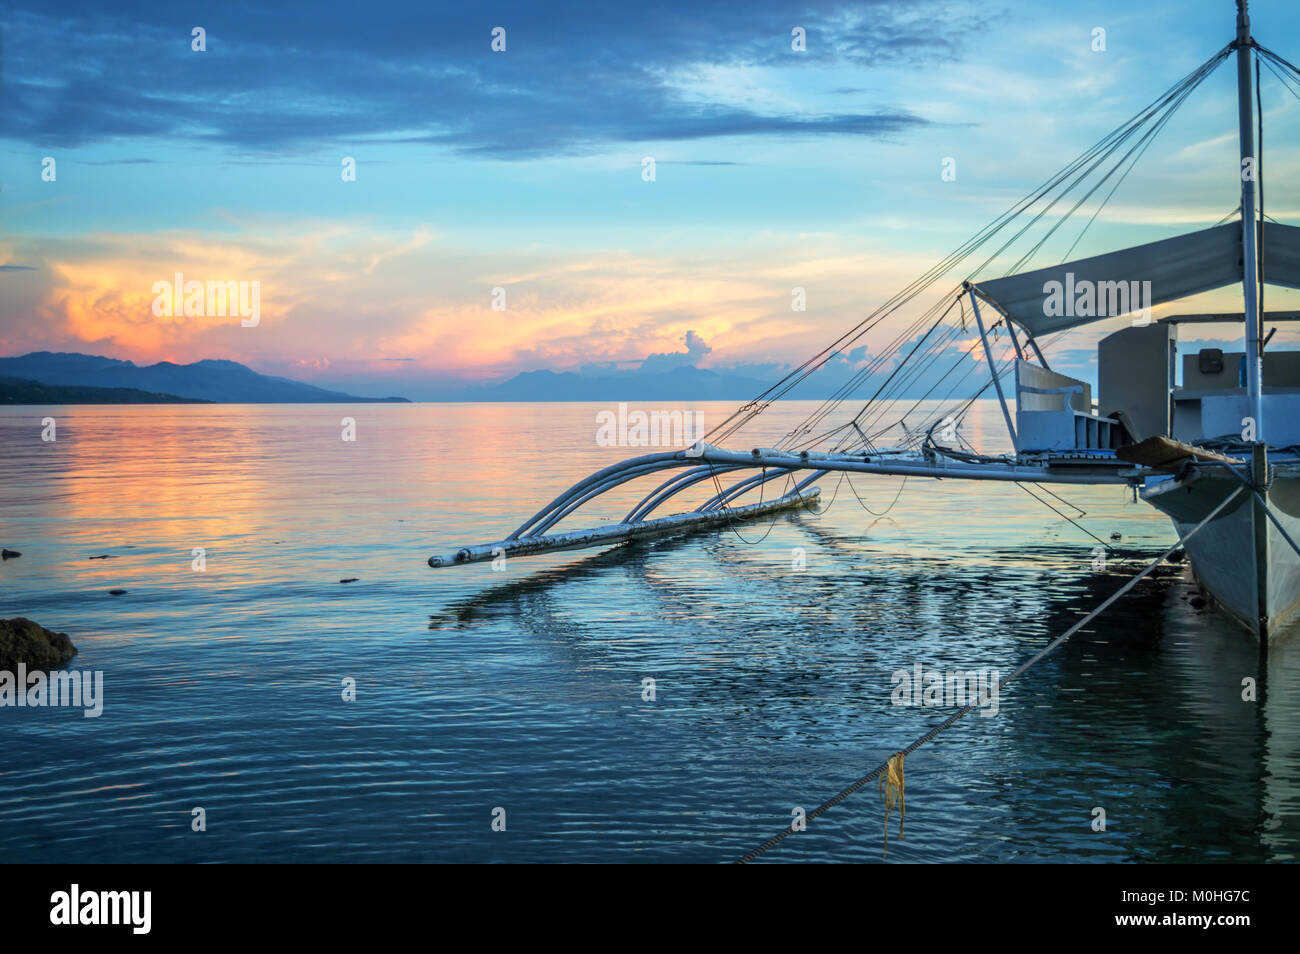 Banka, bateau de pêche traditionnelle des Philippines au coucher du soleil, l'île de Cebu, aux Philippines Banque D'Images